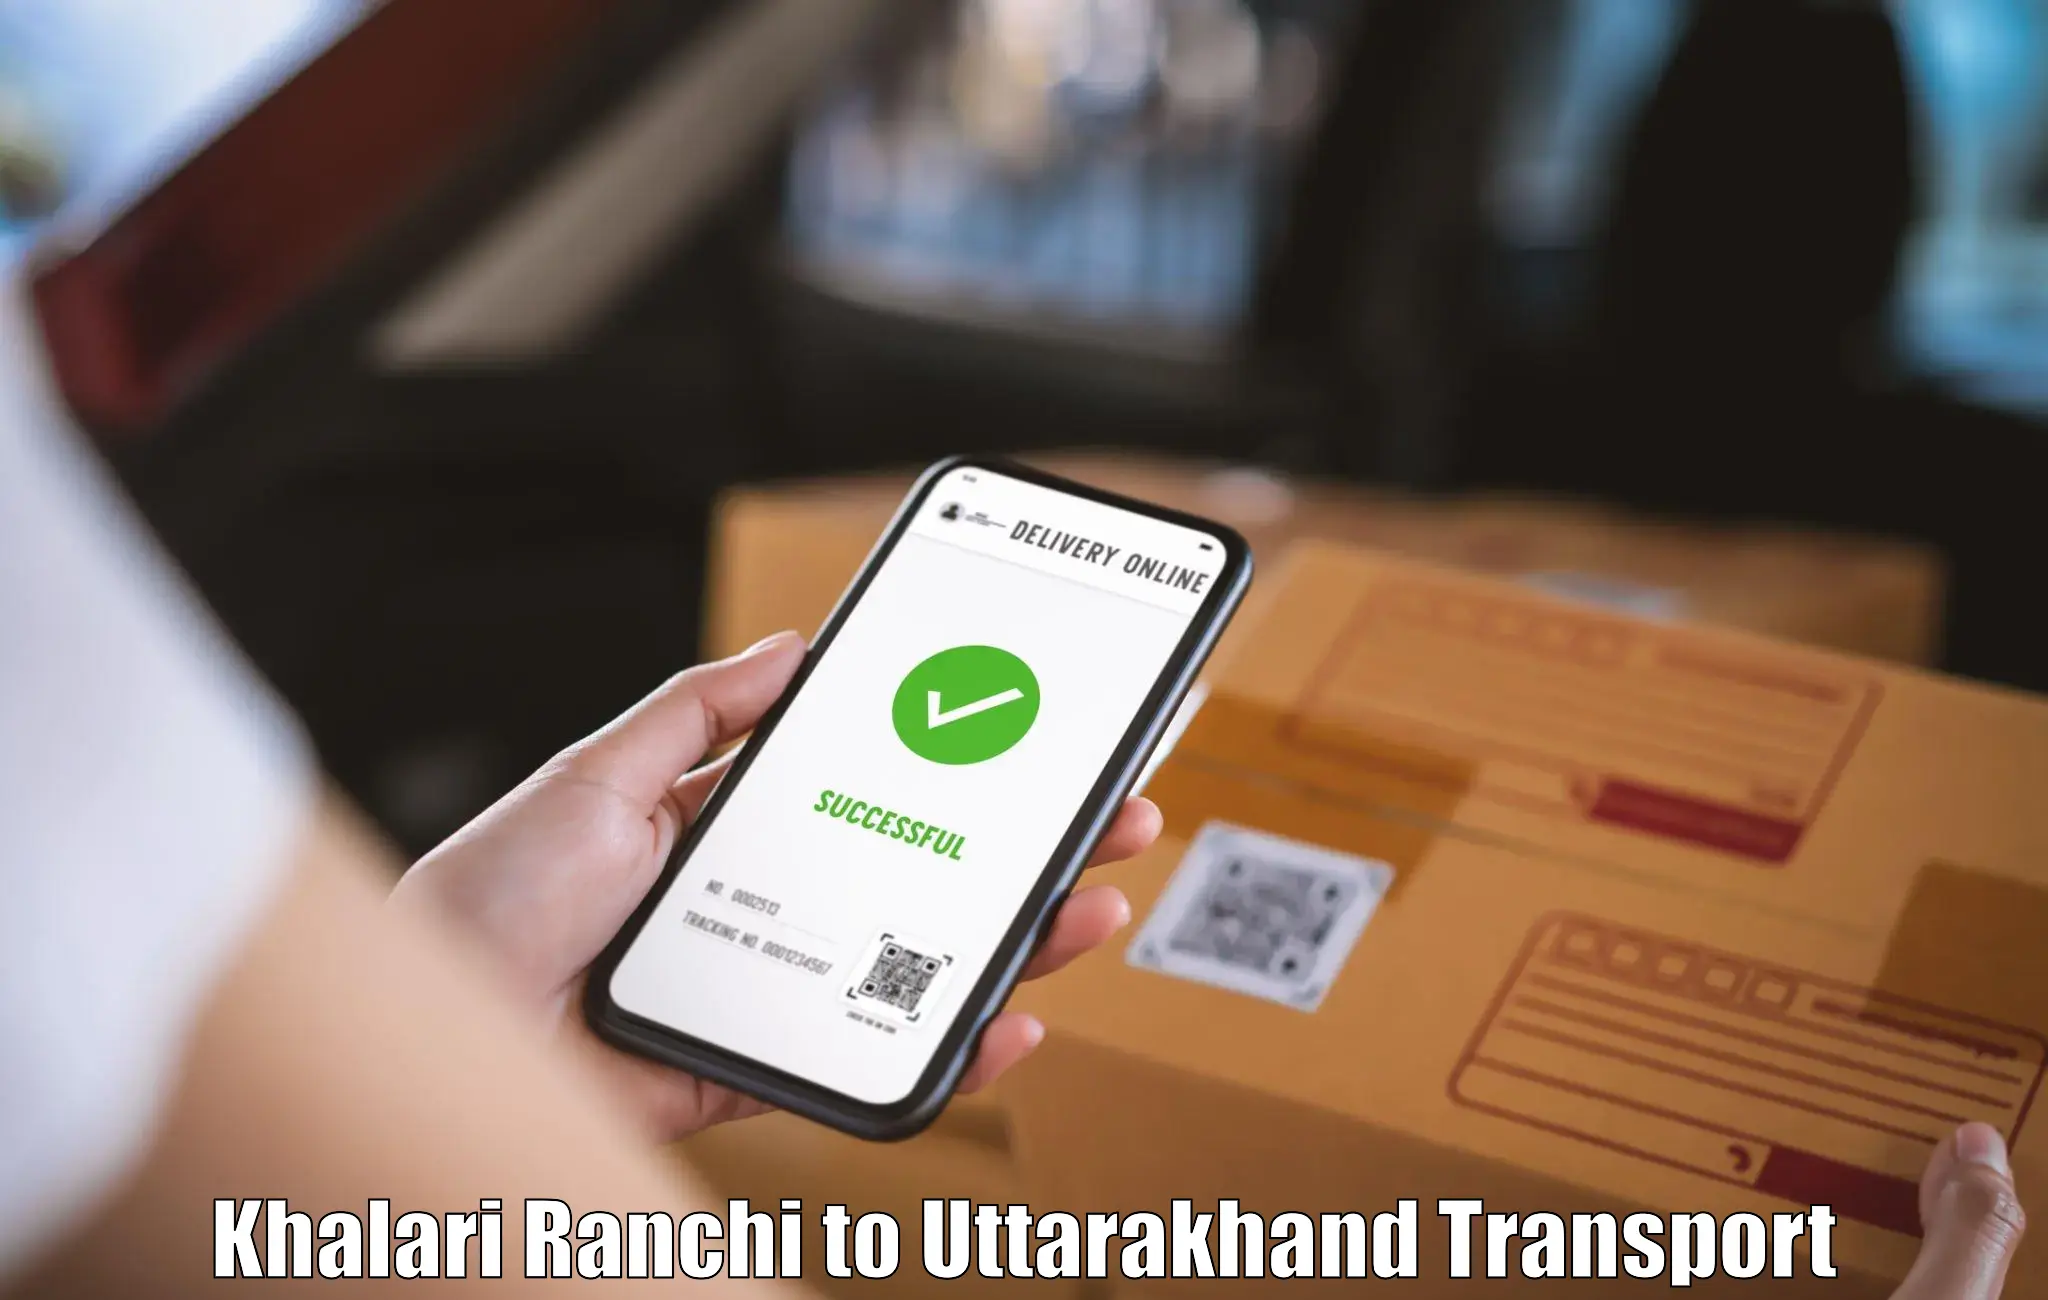 Luggage transport services Khalari Ranchi to Uttarakhand